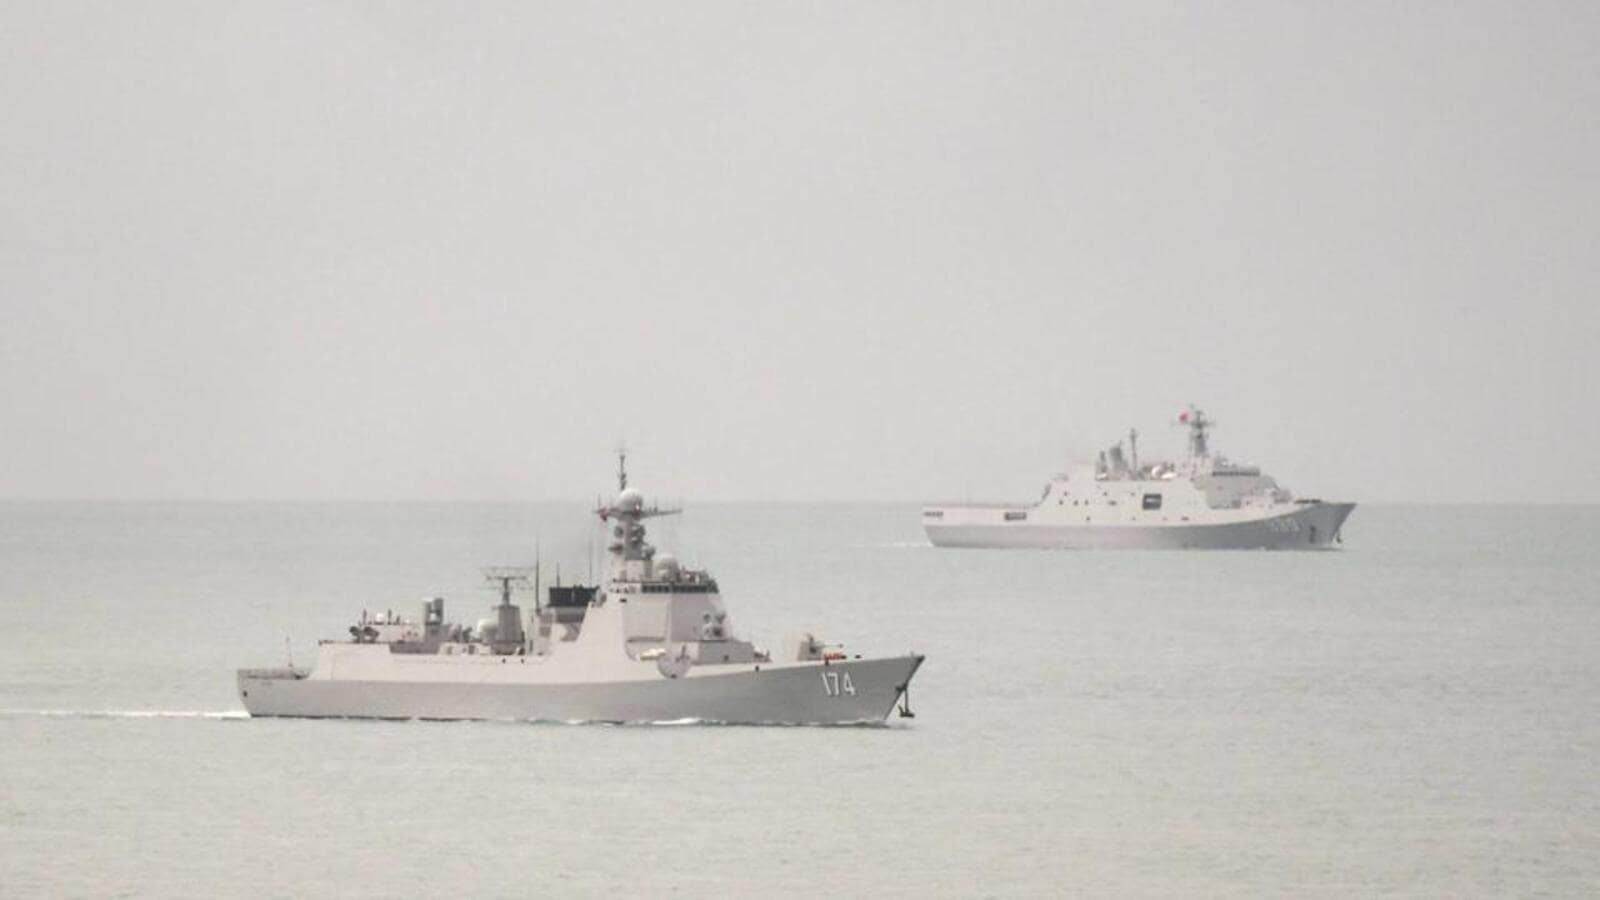 La Cina invia portaerei e navi da guerra nei mari vicini al Giappone |  notizie dal mondo